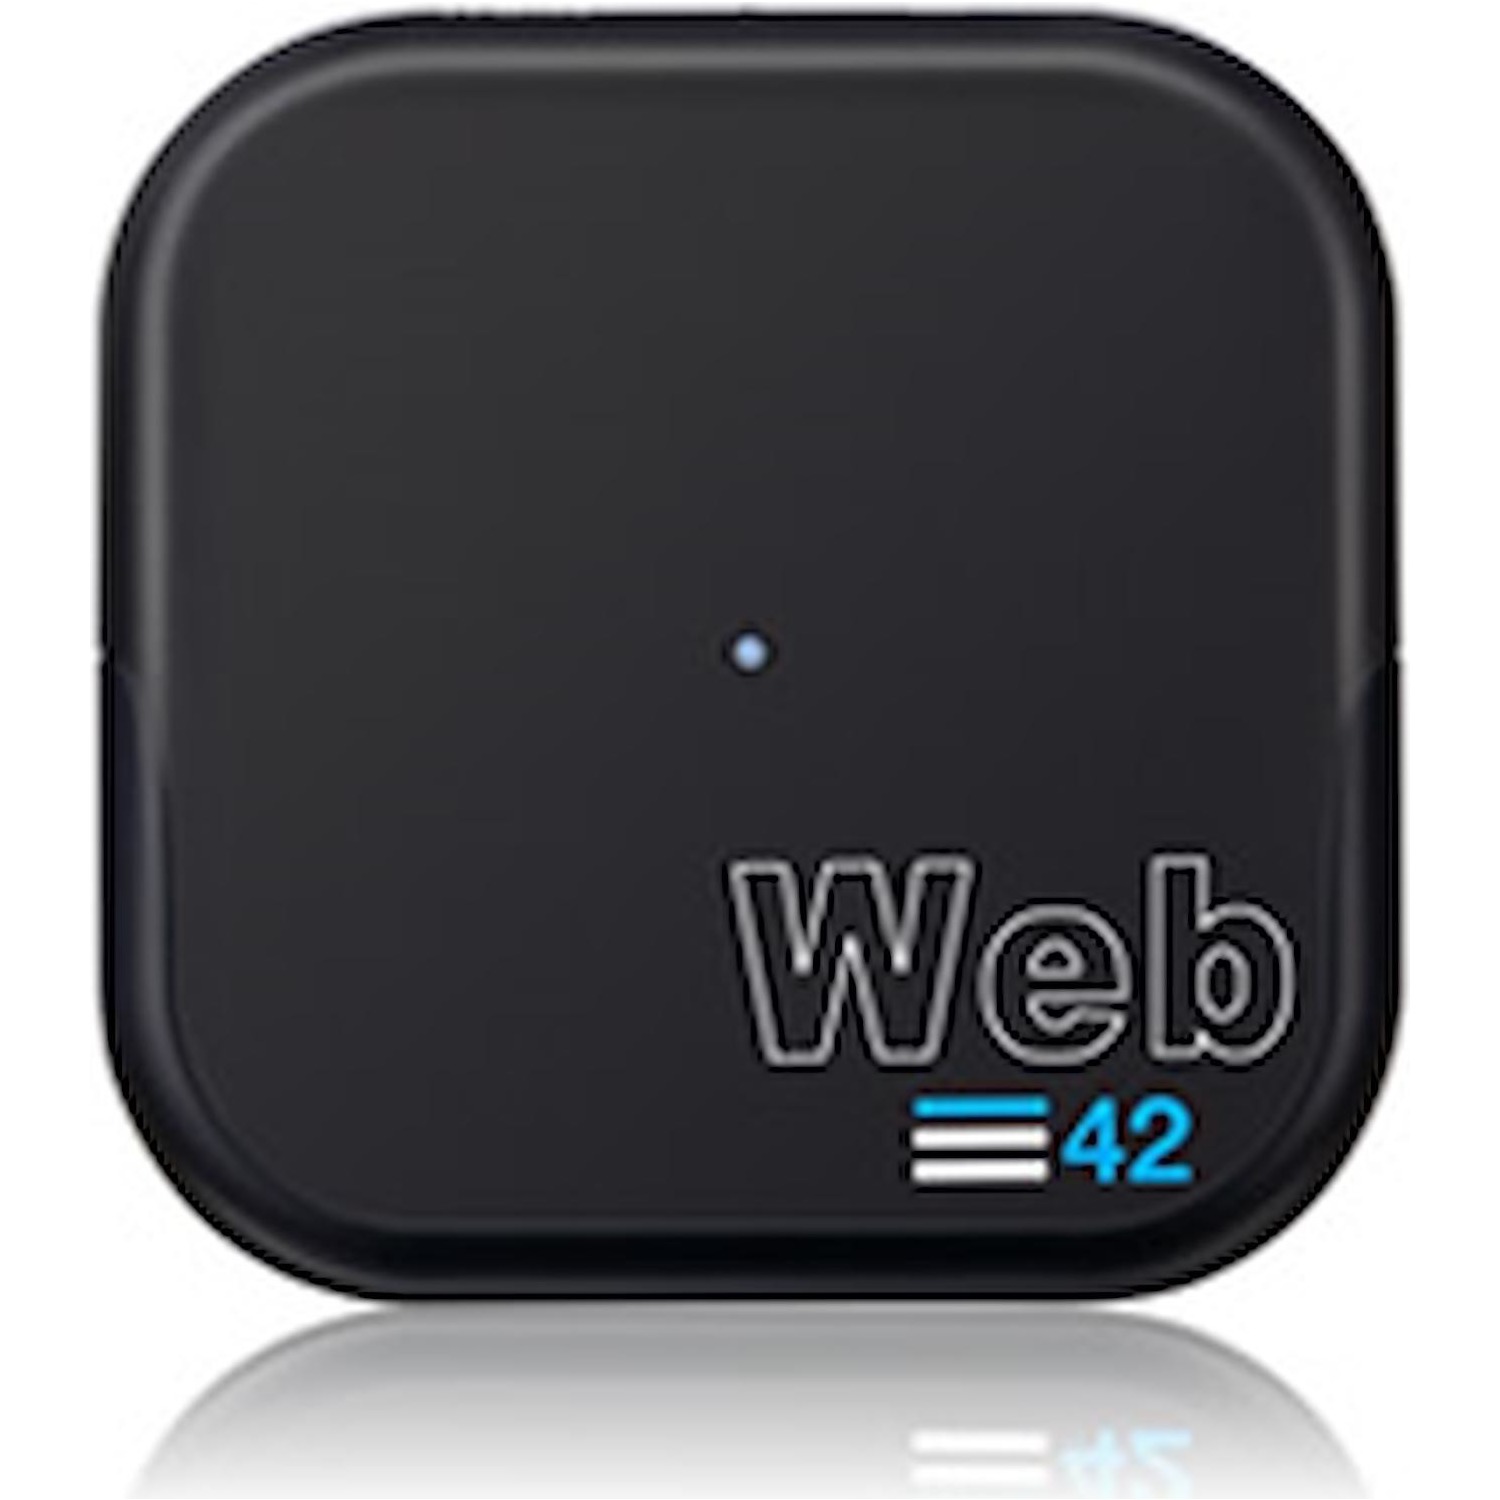 Immagine per Modem Wi-Fi WebCube 42 da DIMOStore